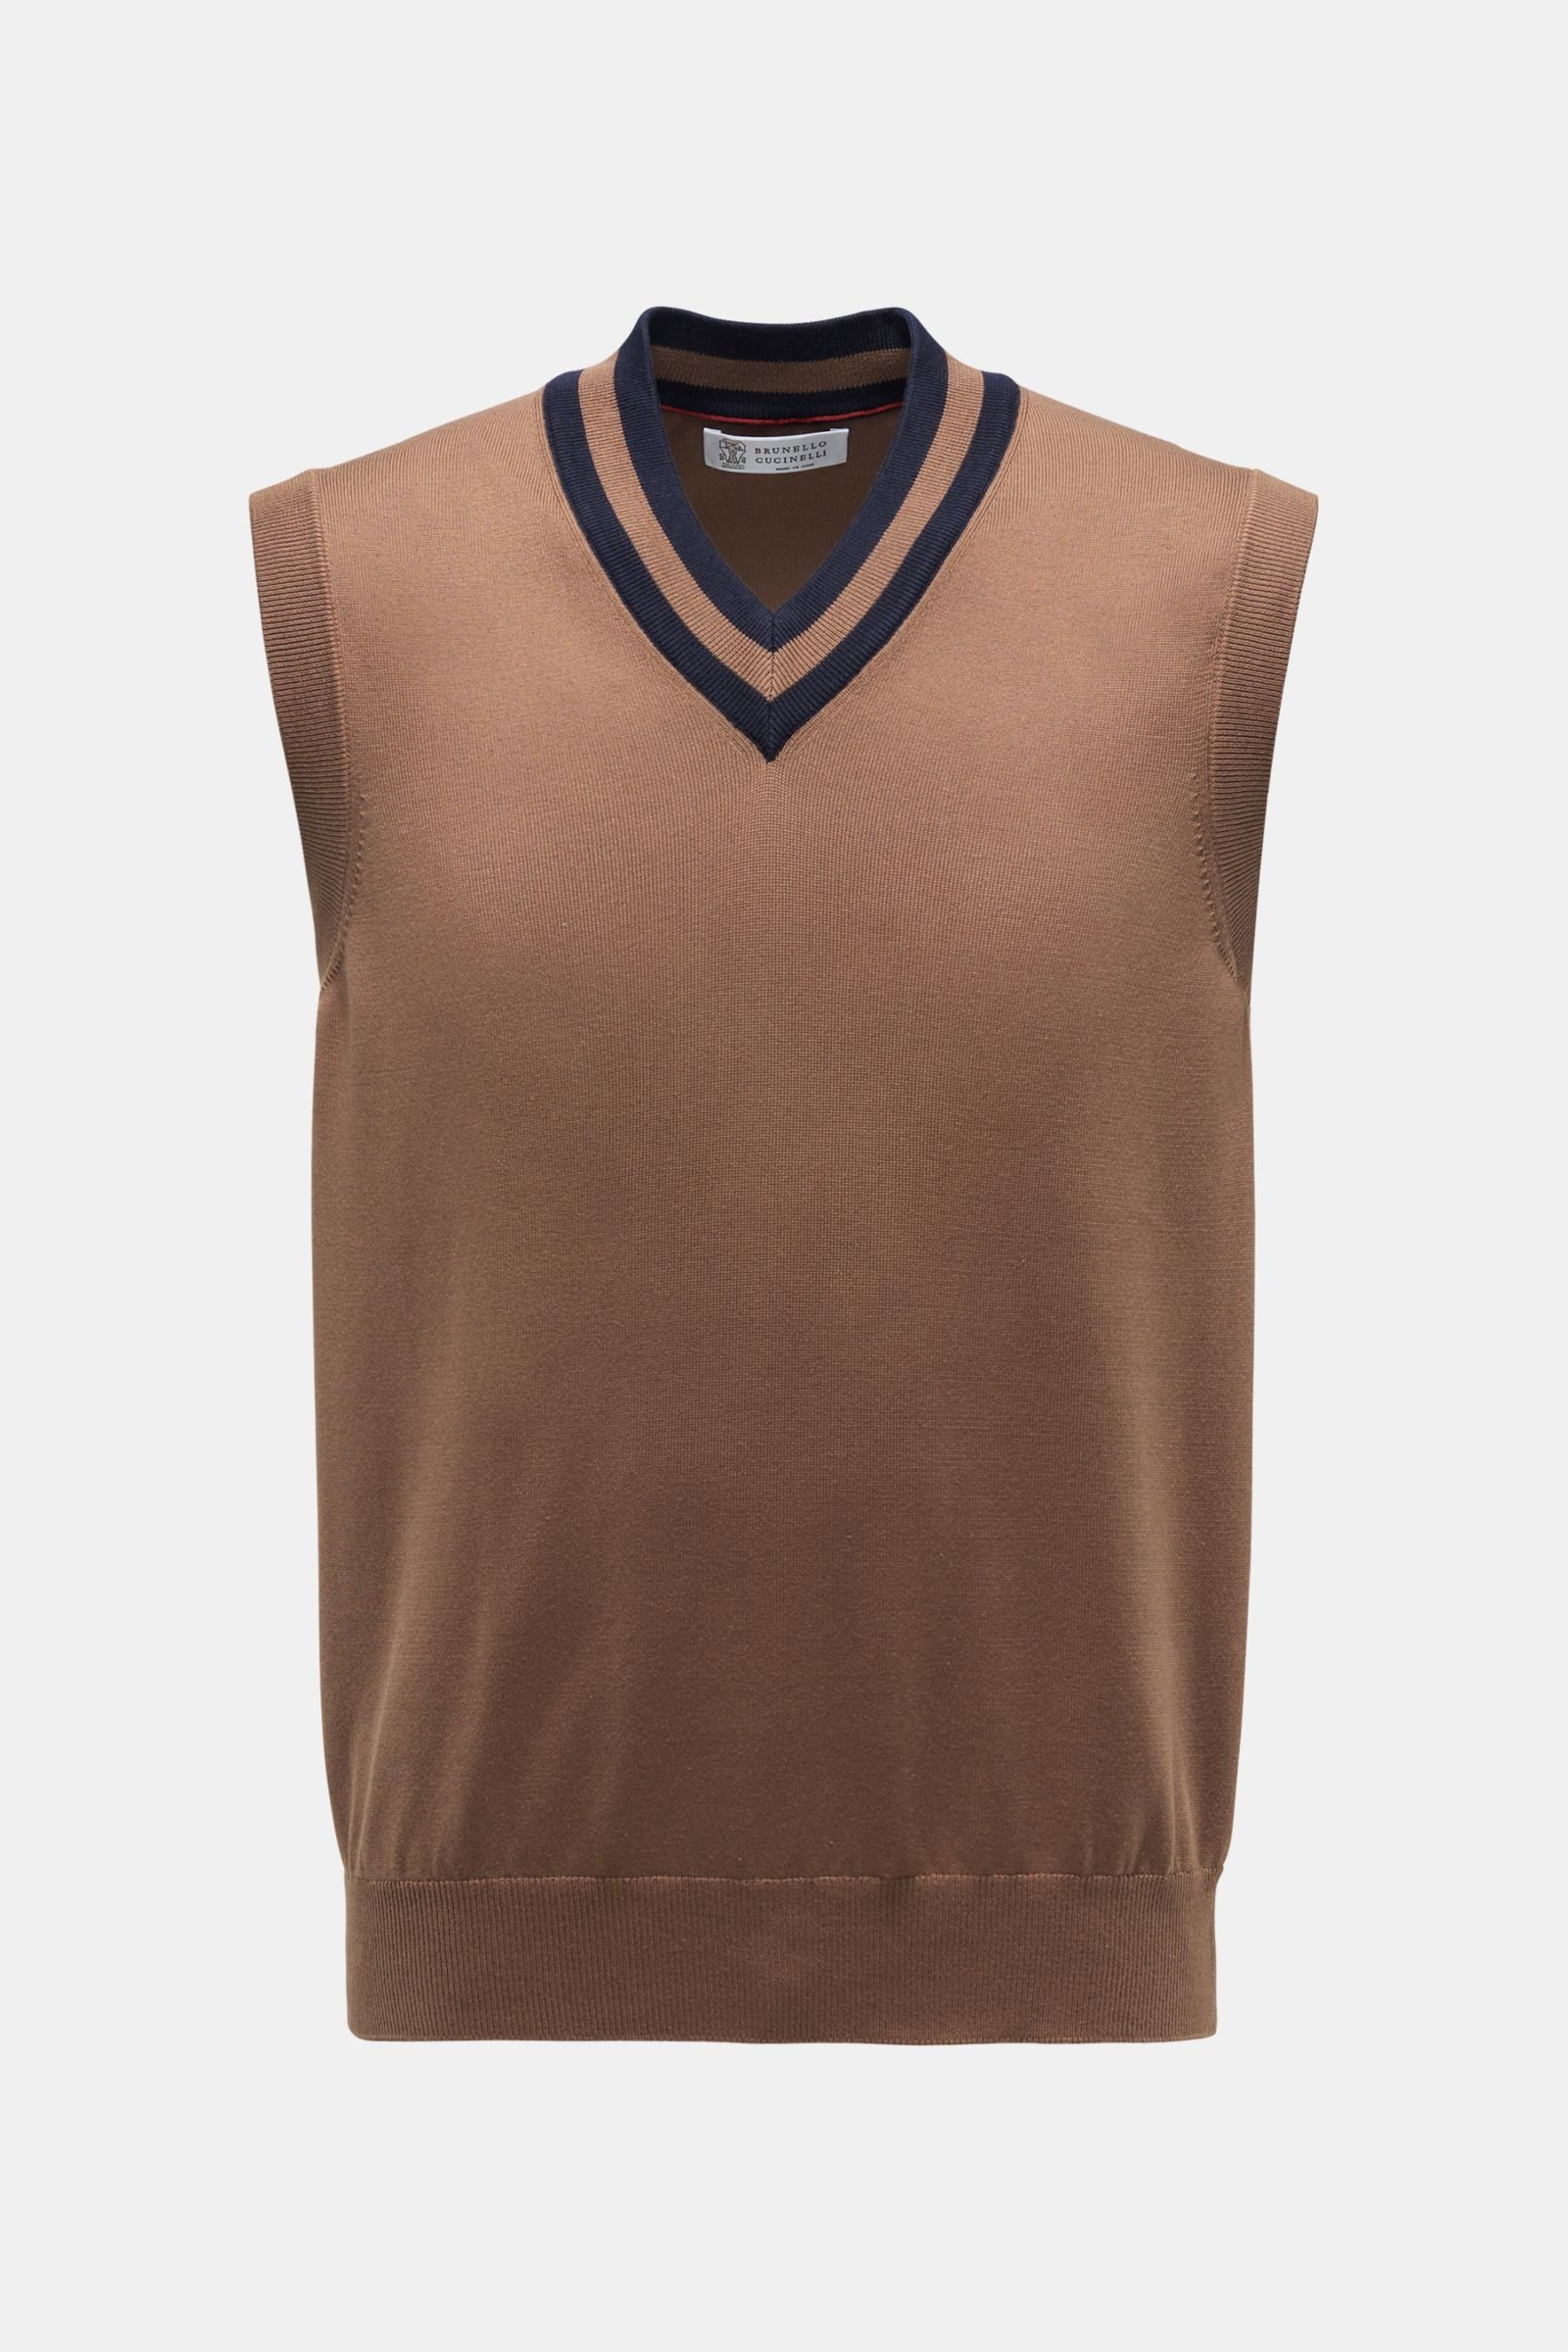 V-neck sweater vest brown/navy